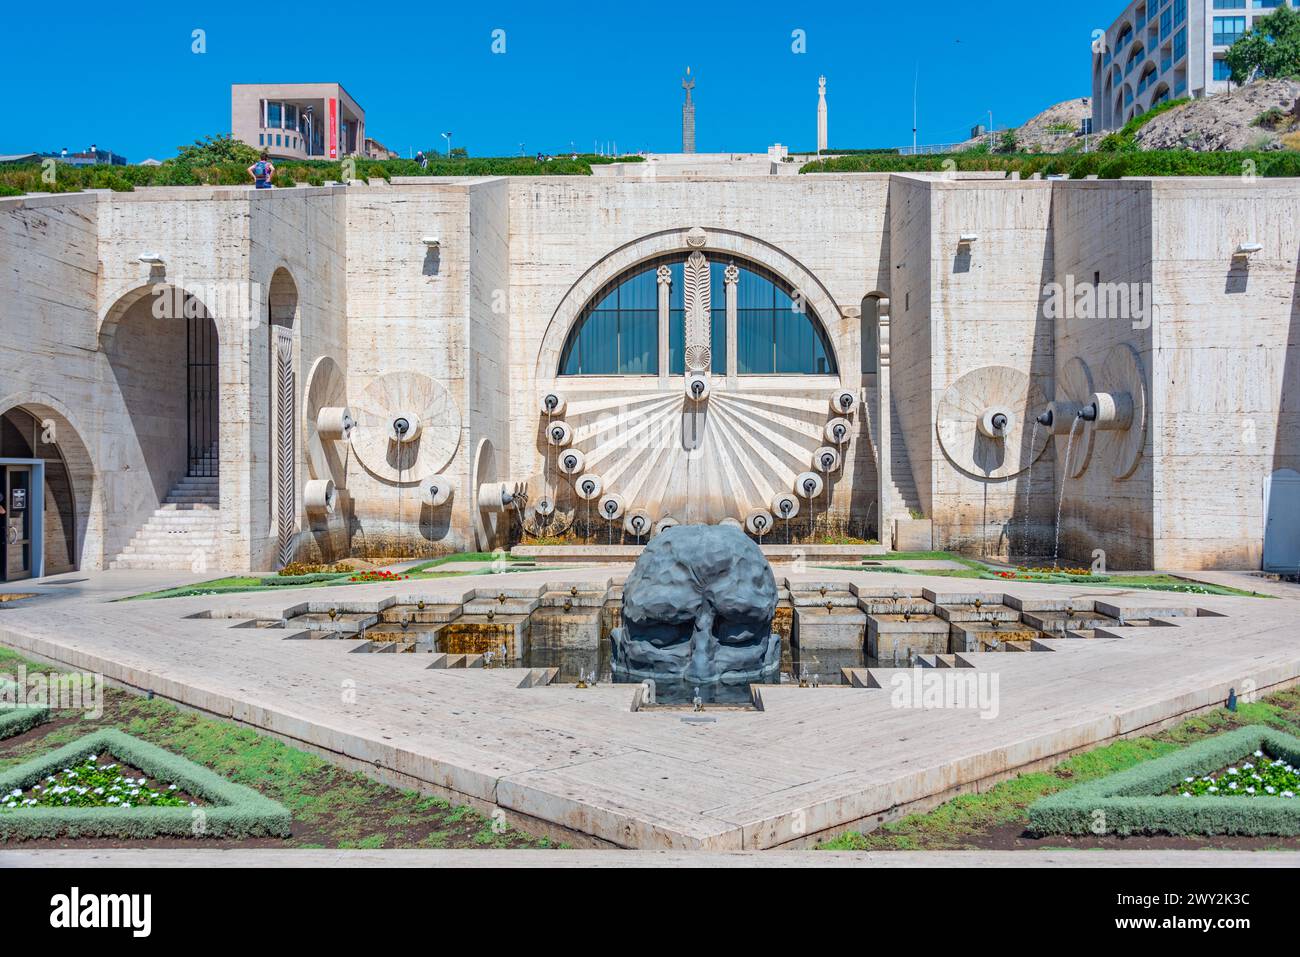 Cascade d'Erevan et sculpture de visiteur vues pendant une journée ensoleillée en Arménie Banque D'Images